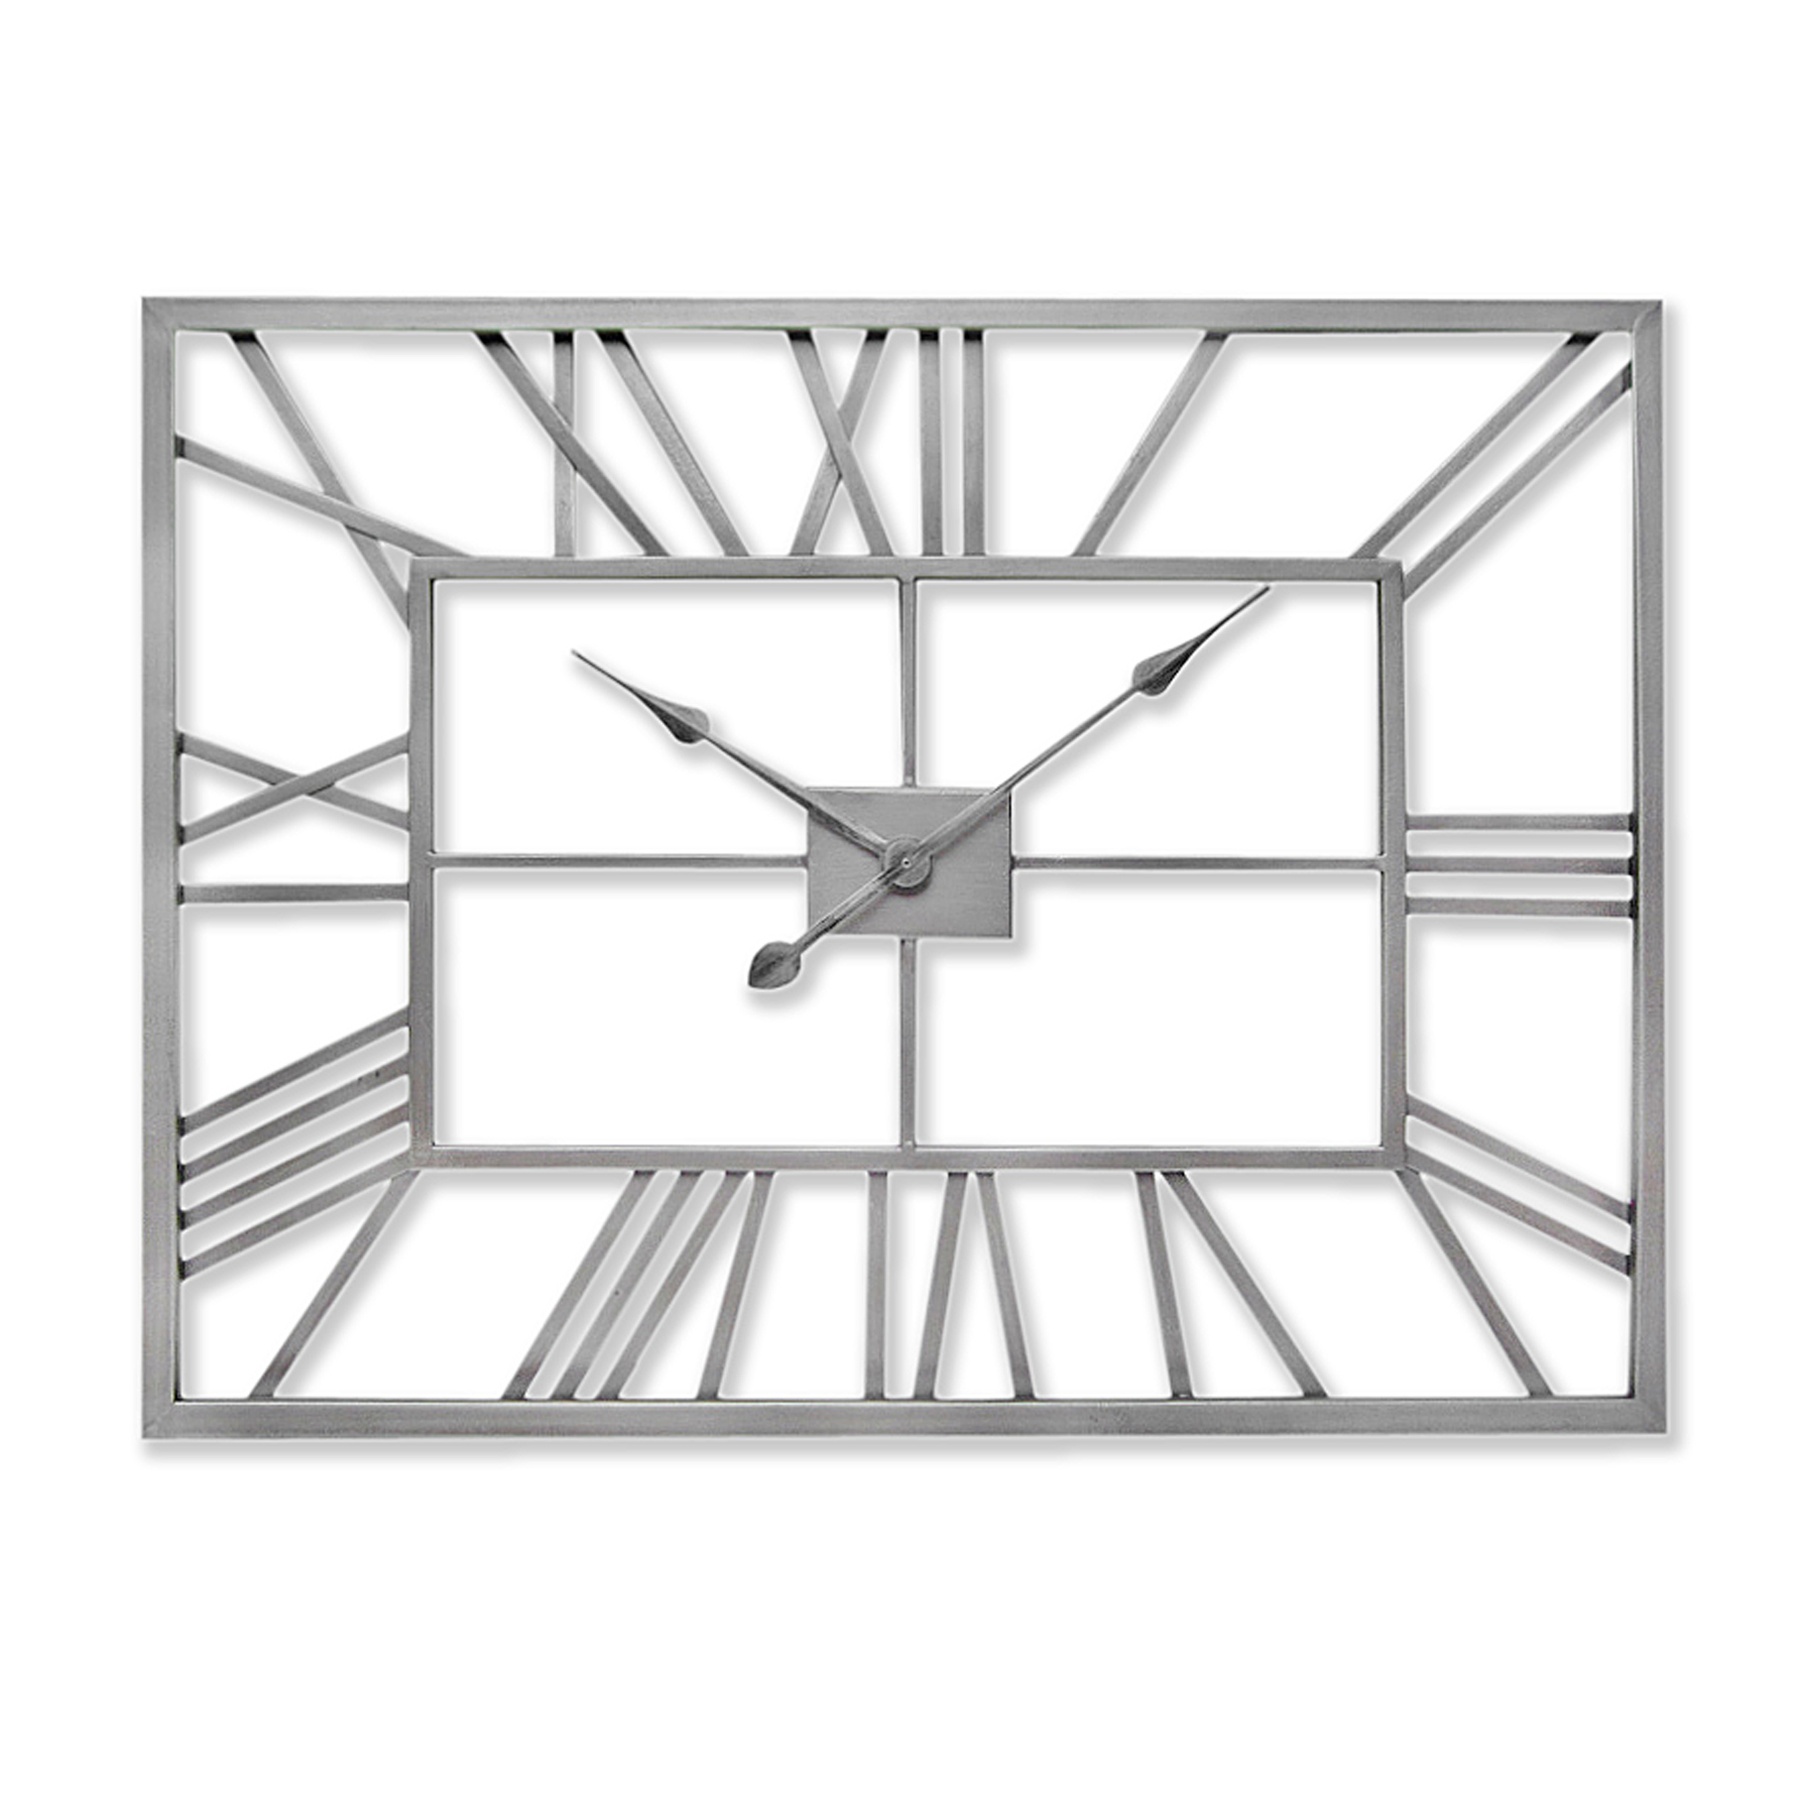 Silver Rectangular Skeleton Wall Clock